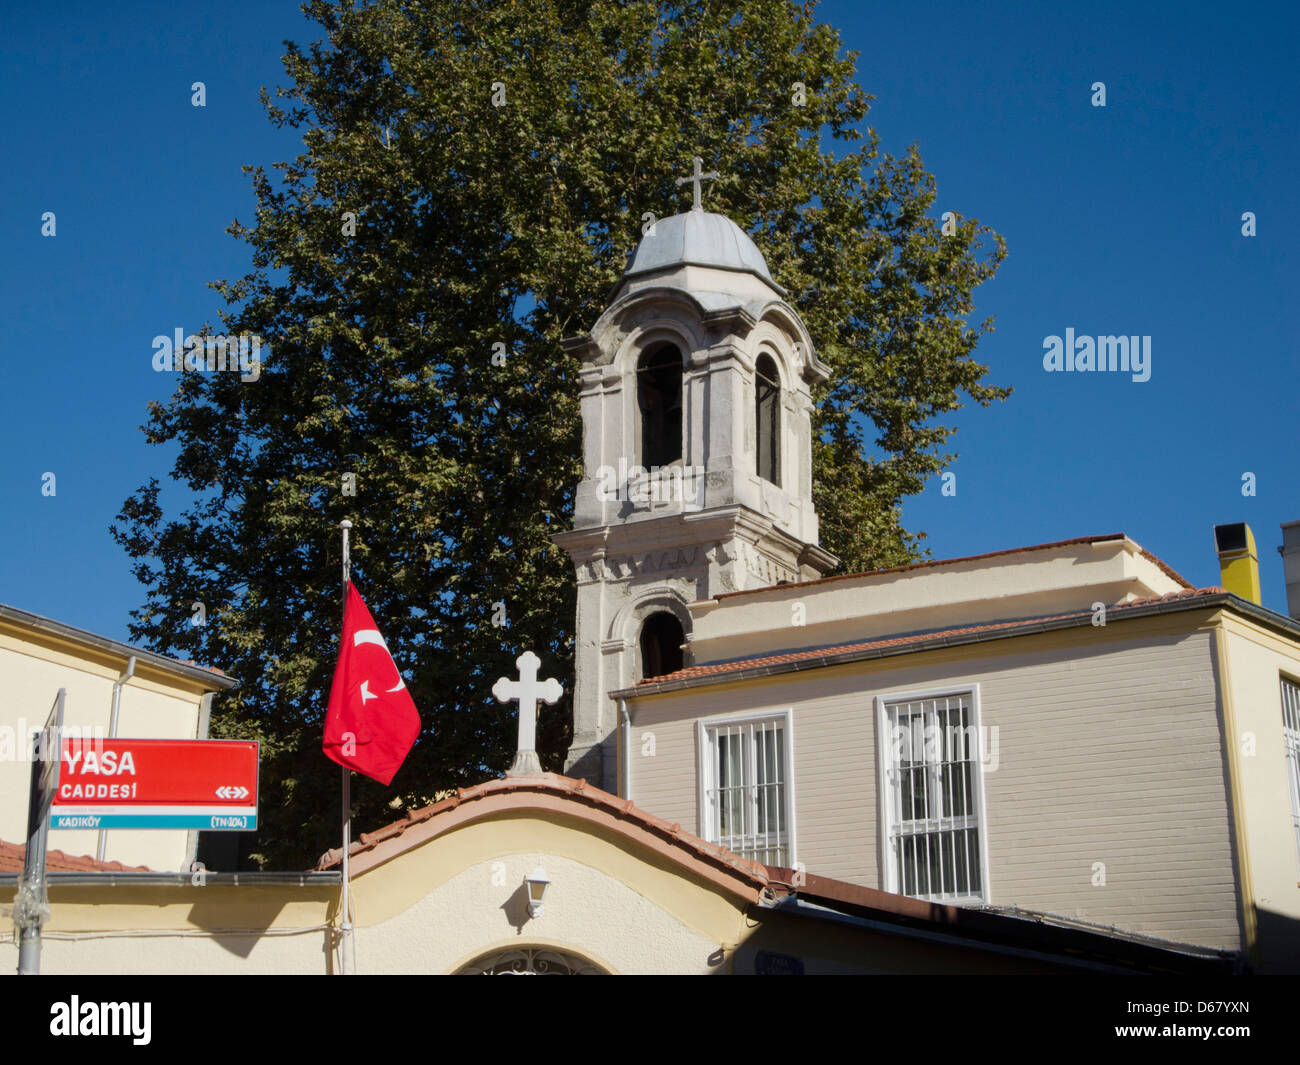 Türkei, Istanbul, Kadiküy, griechisch-orthodoxe Kirche Agia Efemia Foto Stock